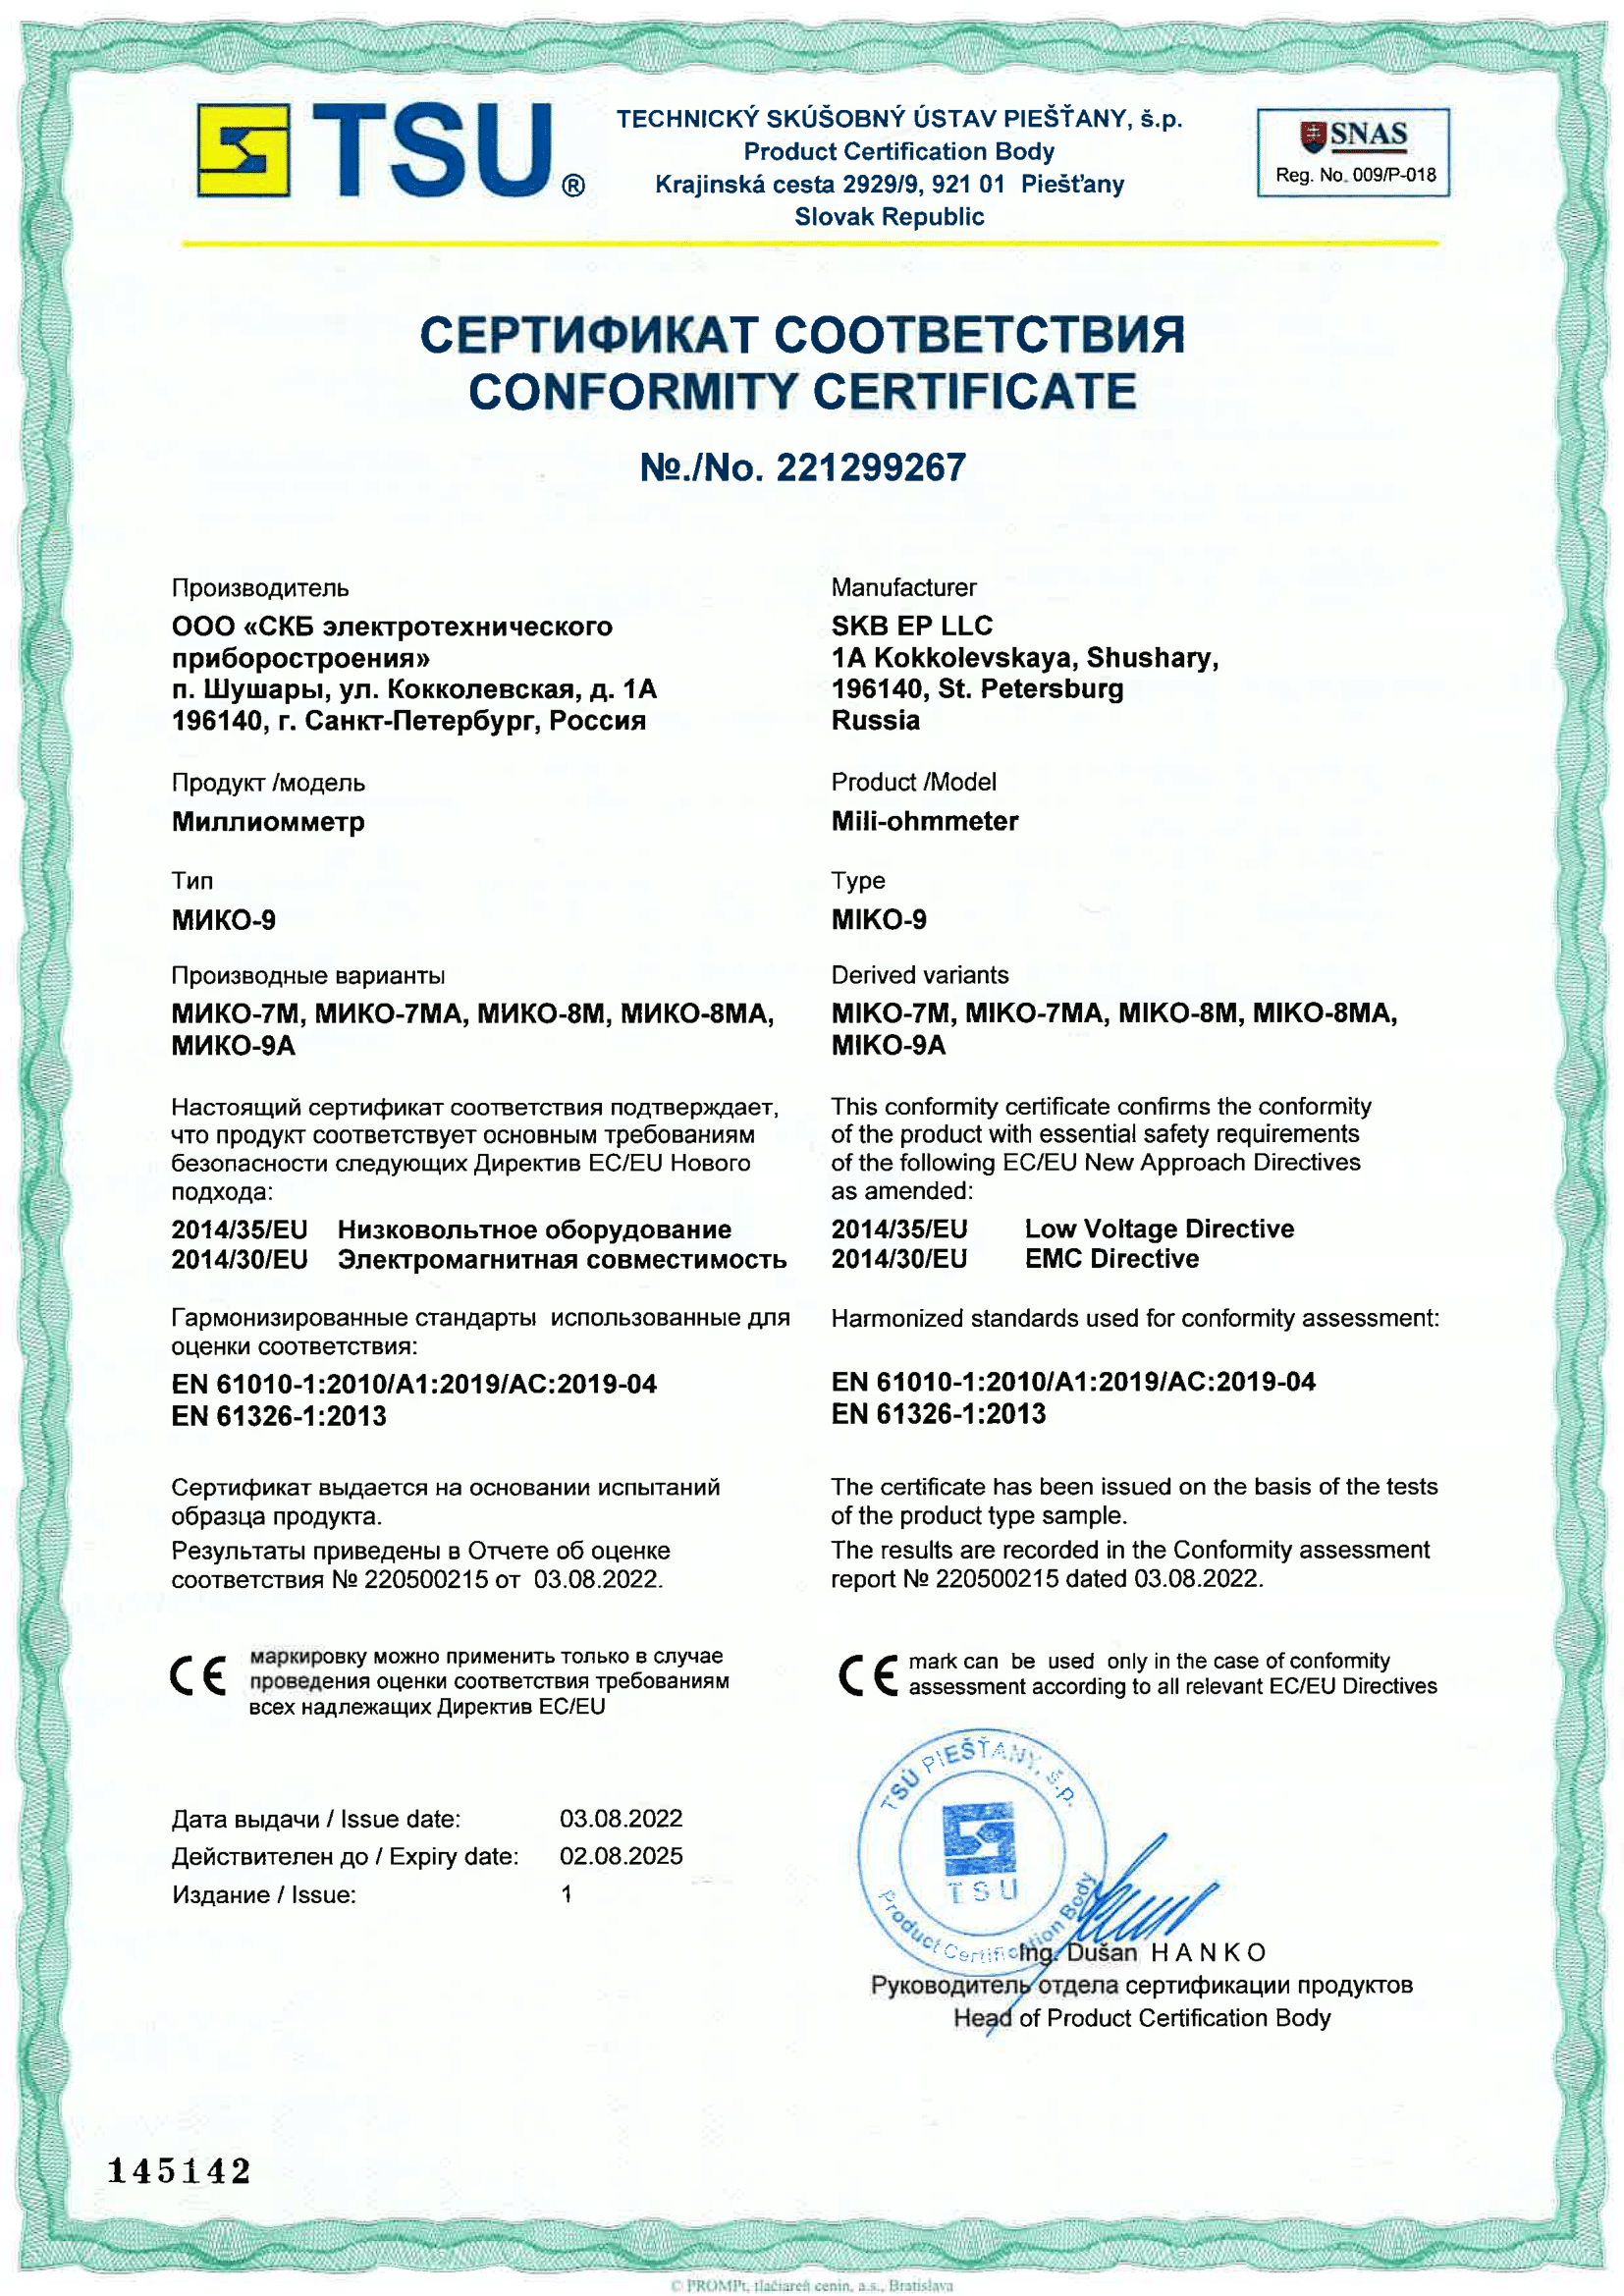 Мико 8а инструкция. Hitachi Certificate of conformity. Certificate of conformity aircraft Maintenance.